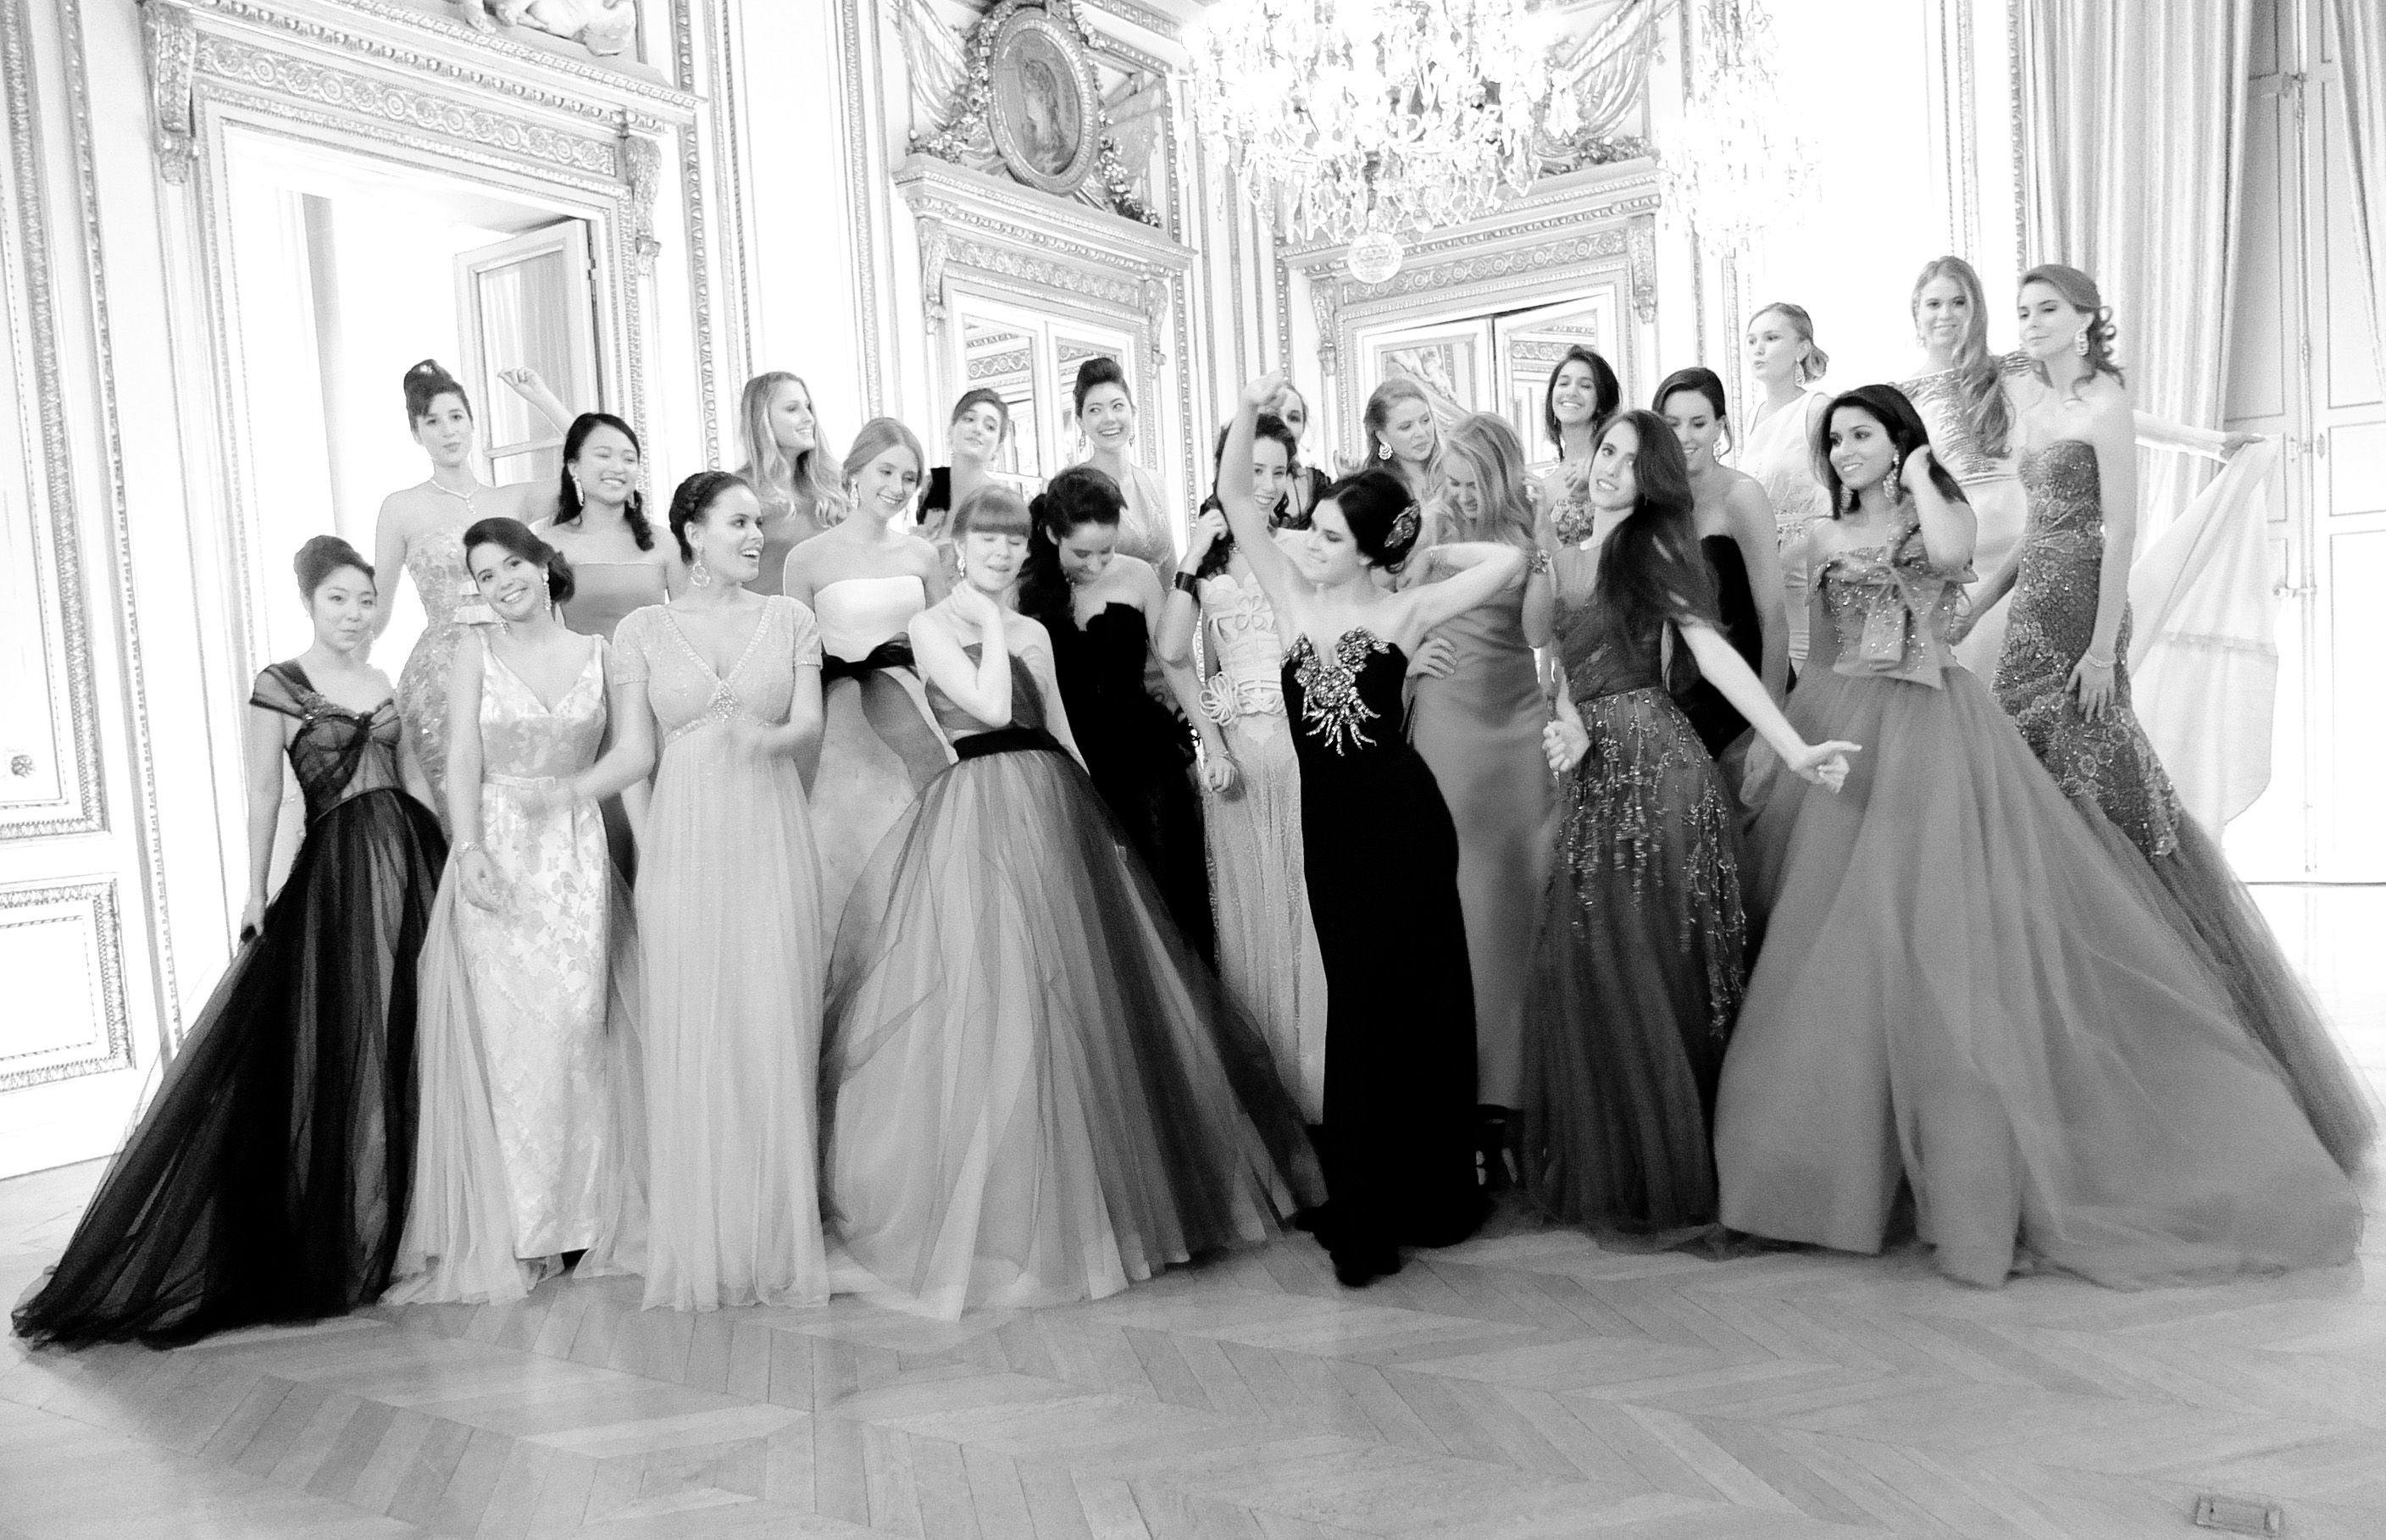 Photo of Le bal des debutantes paris 2011 group picture